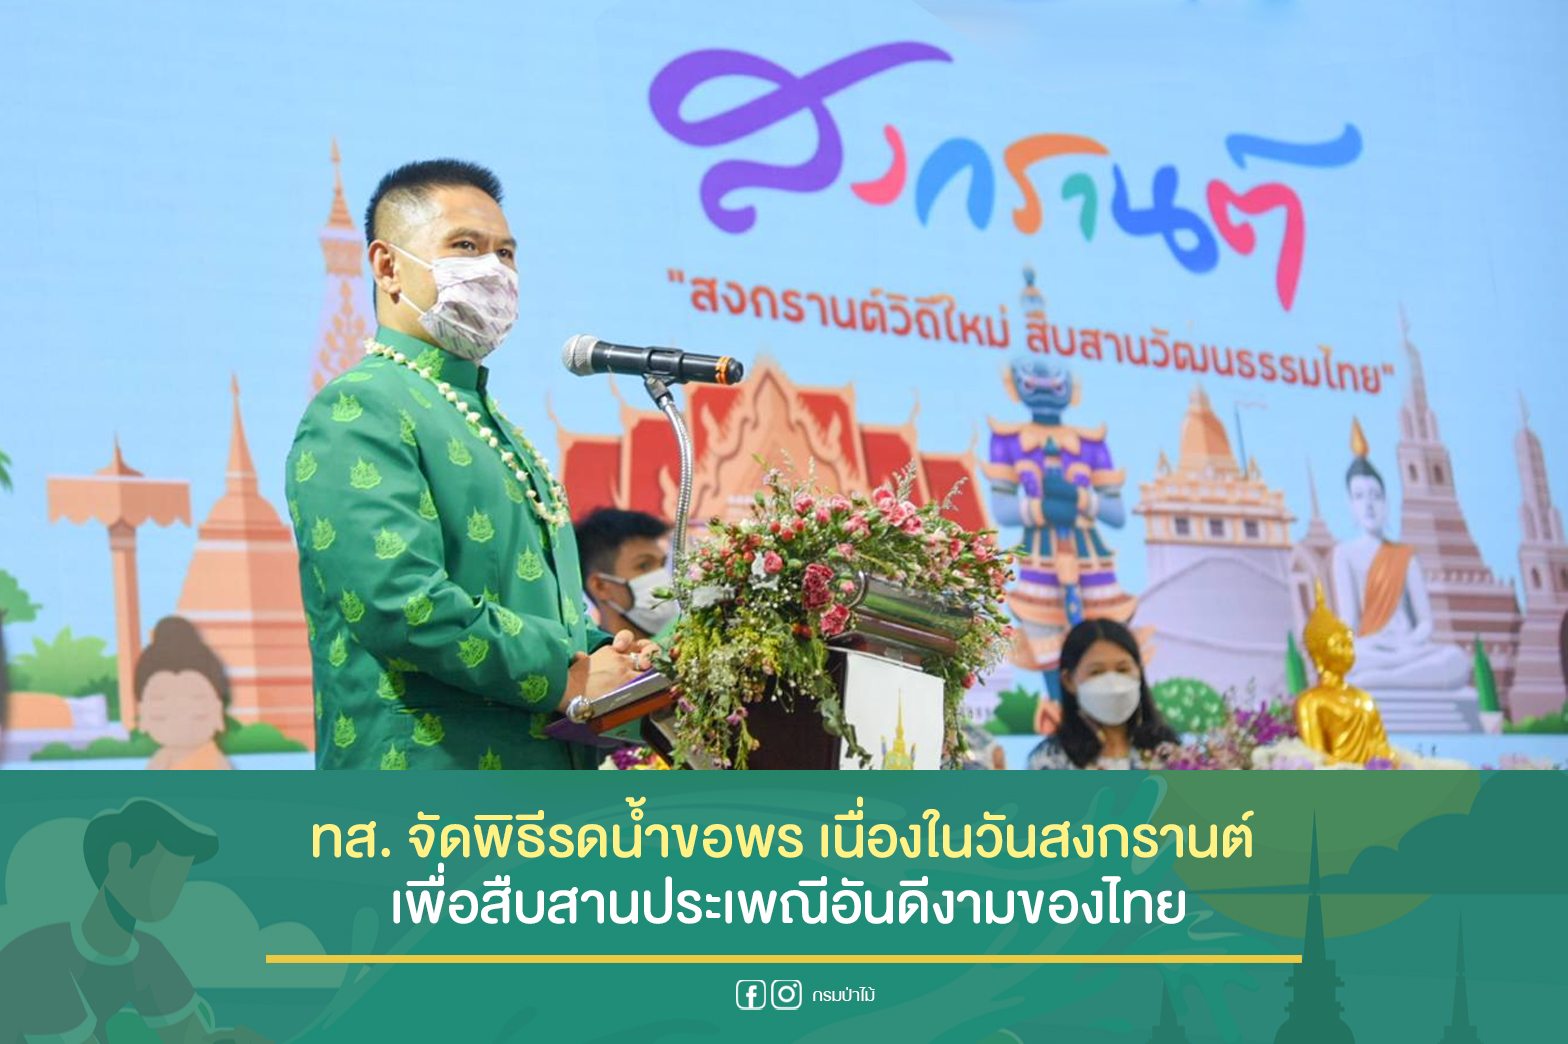 นายวราวุธ ศิลปอาชา รัฐมนตรีว่าการกระทรวงทรัพยากรธรรมชาติและสิ่งแวดล้อม เป็นประธานในพิธีรดน้ำขอพร เนื่องในวันสงกรานต์ เพื่อสืบสานประเพณีอันดีงามของไทย